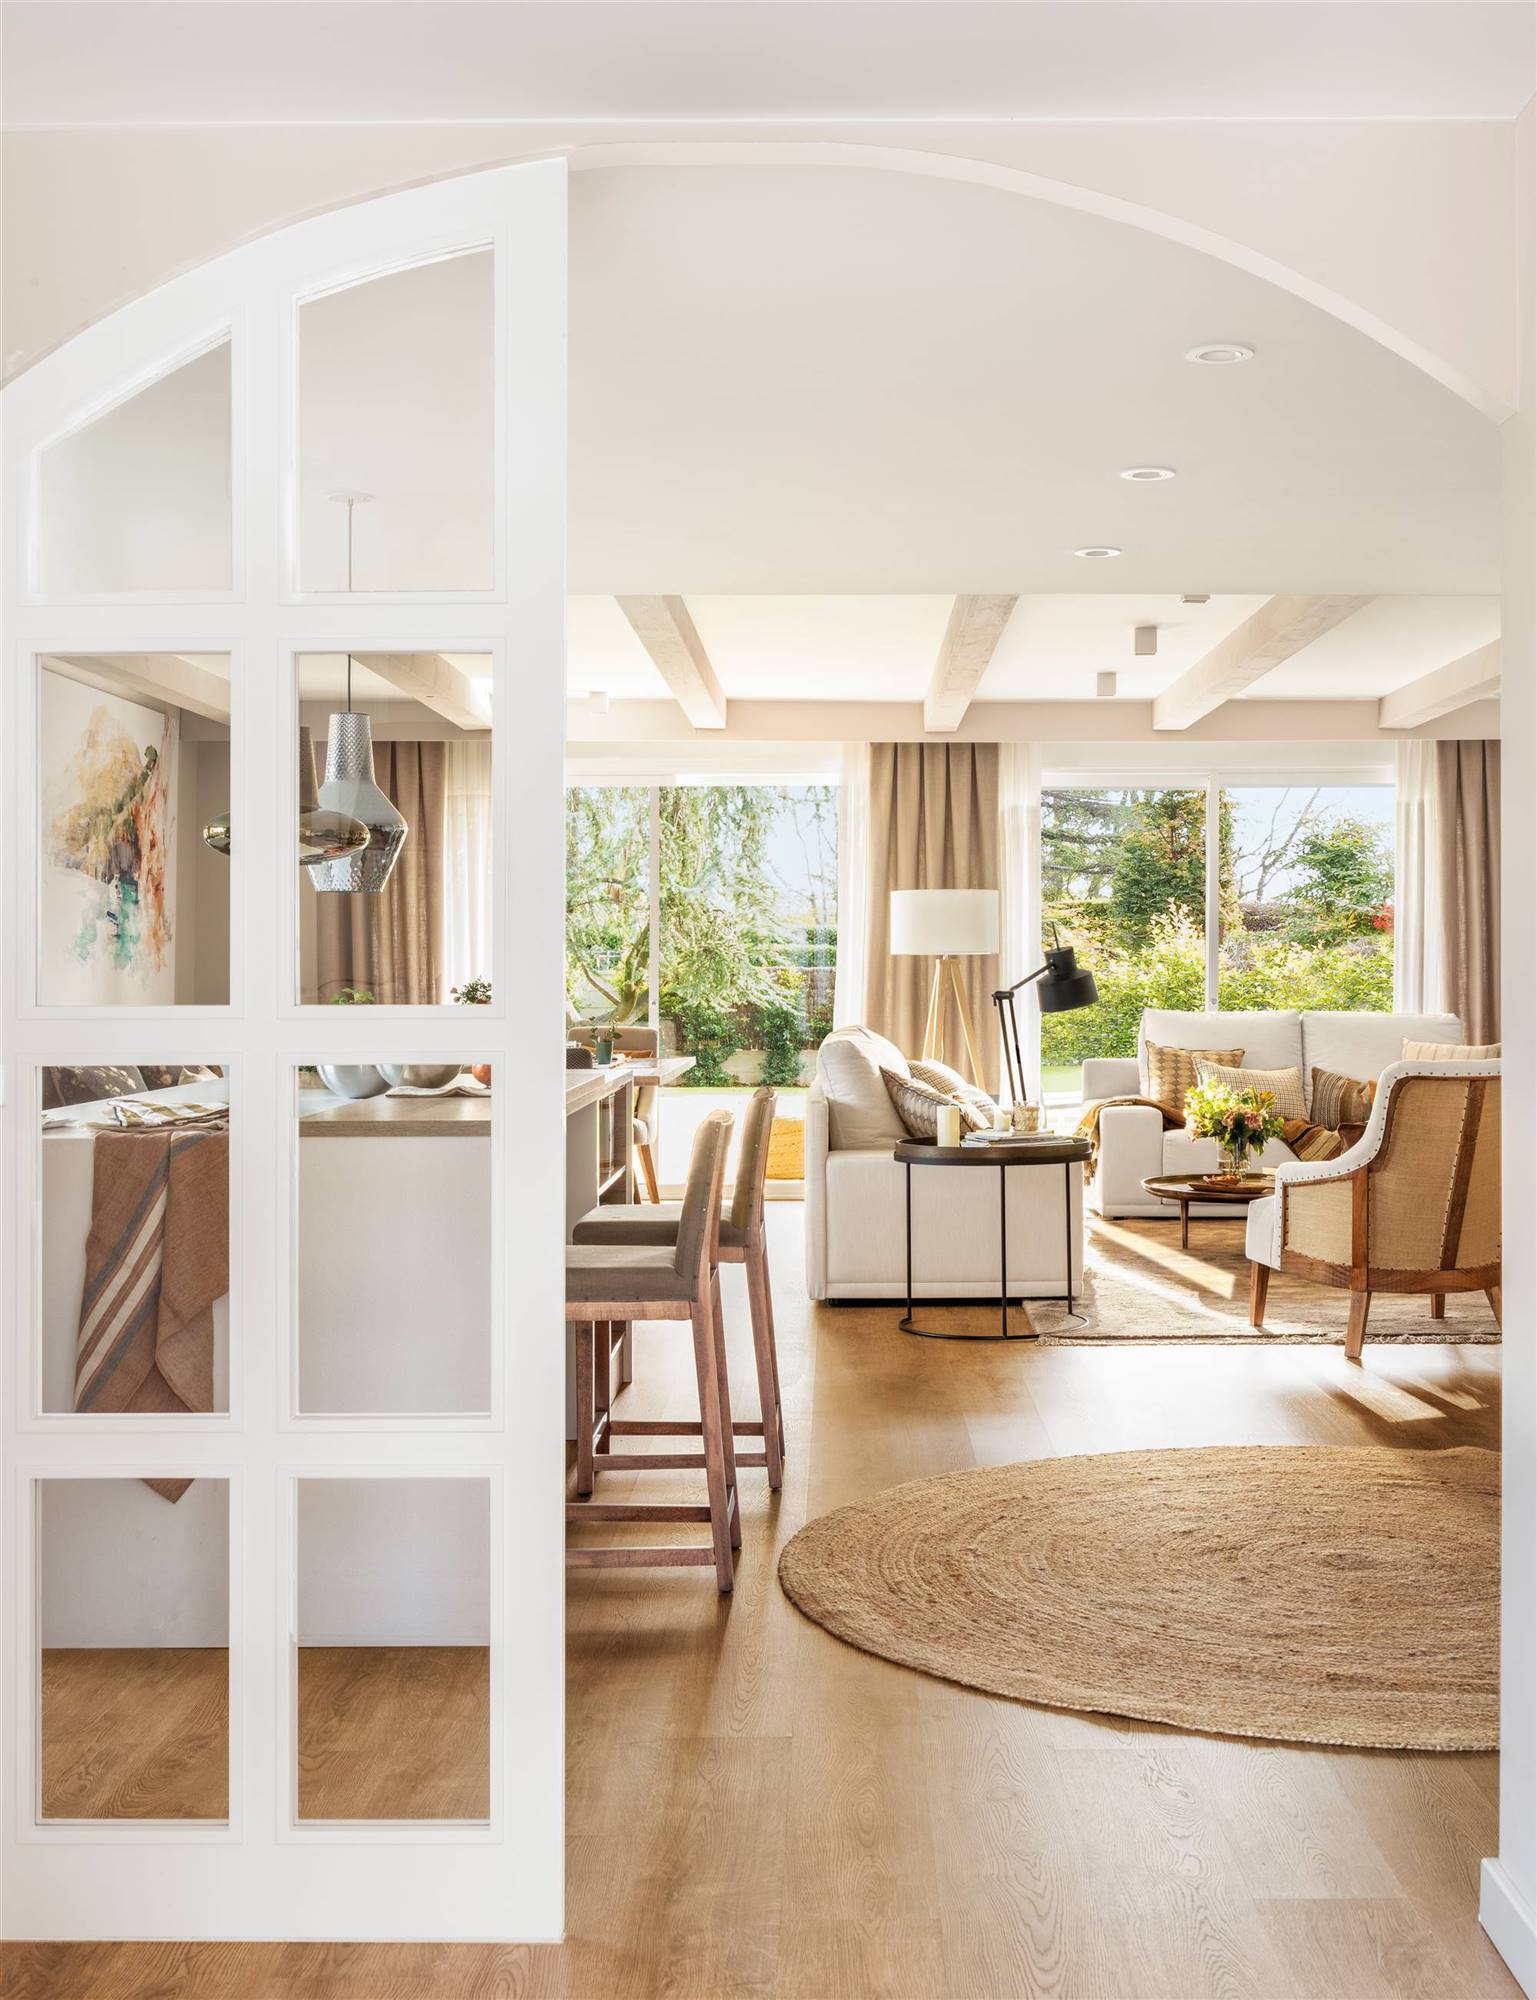 Salón abierto a la cocina con puerta fija blanca acristalada. 